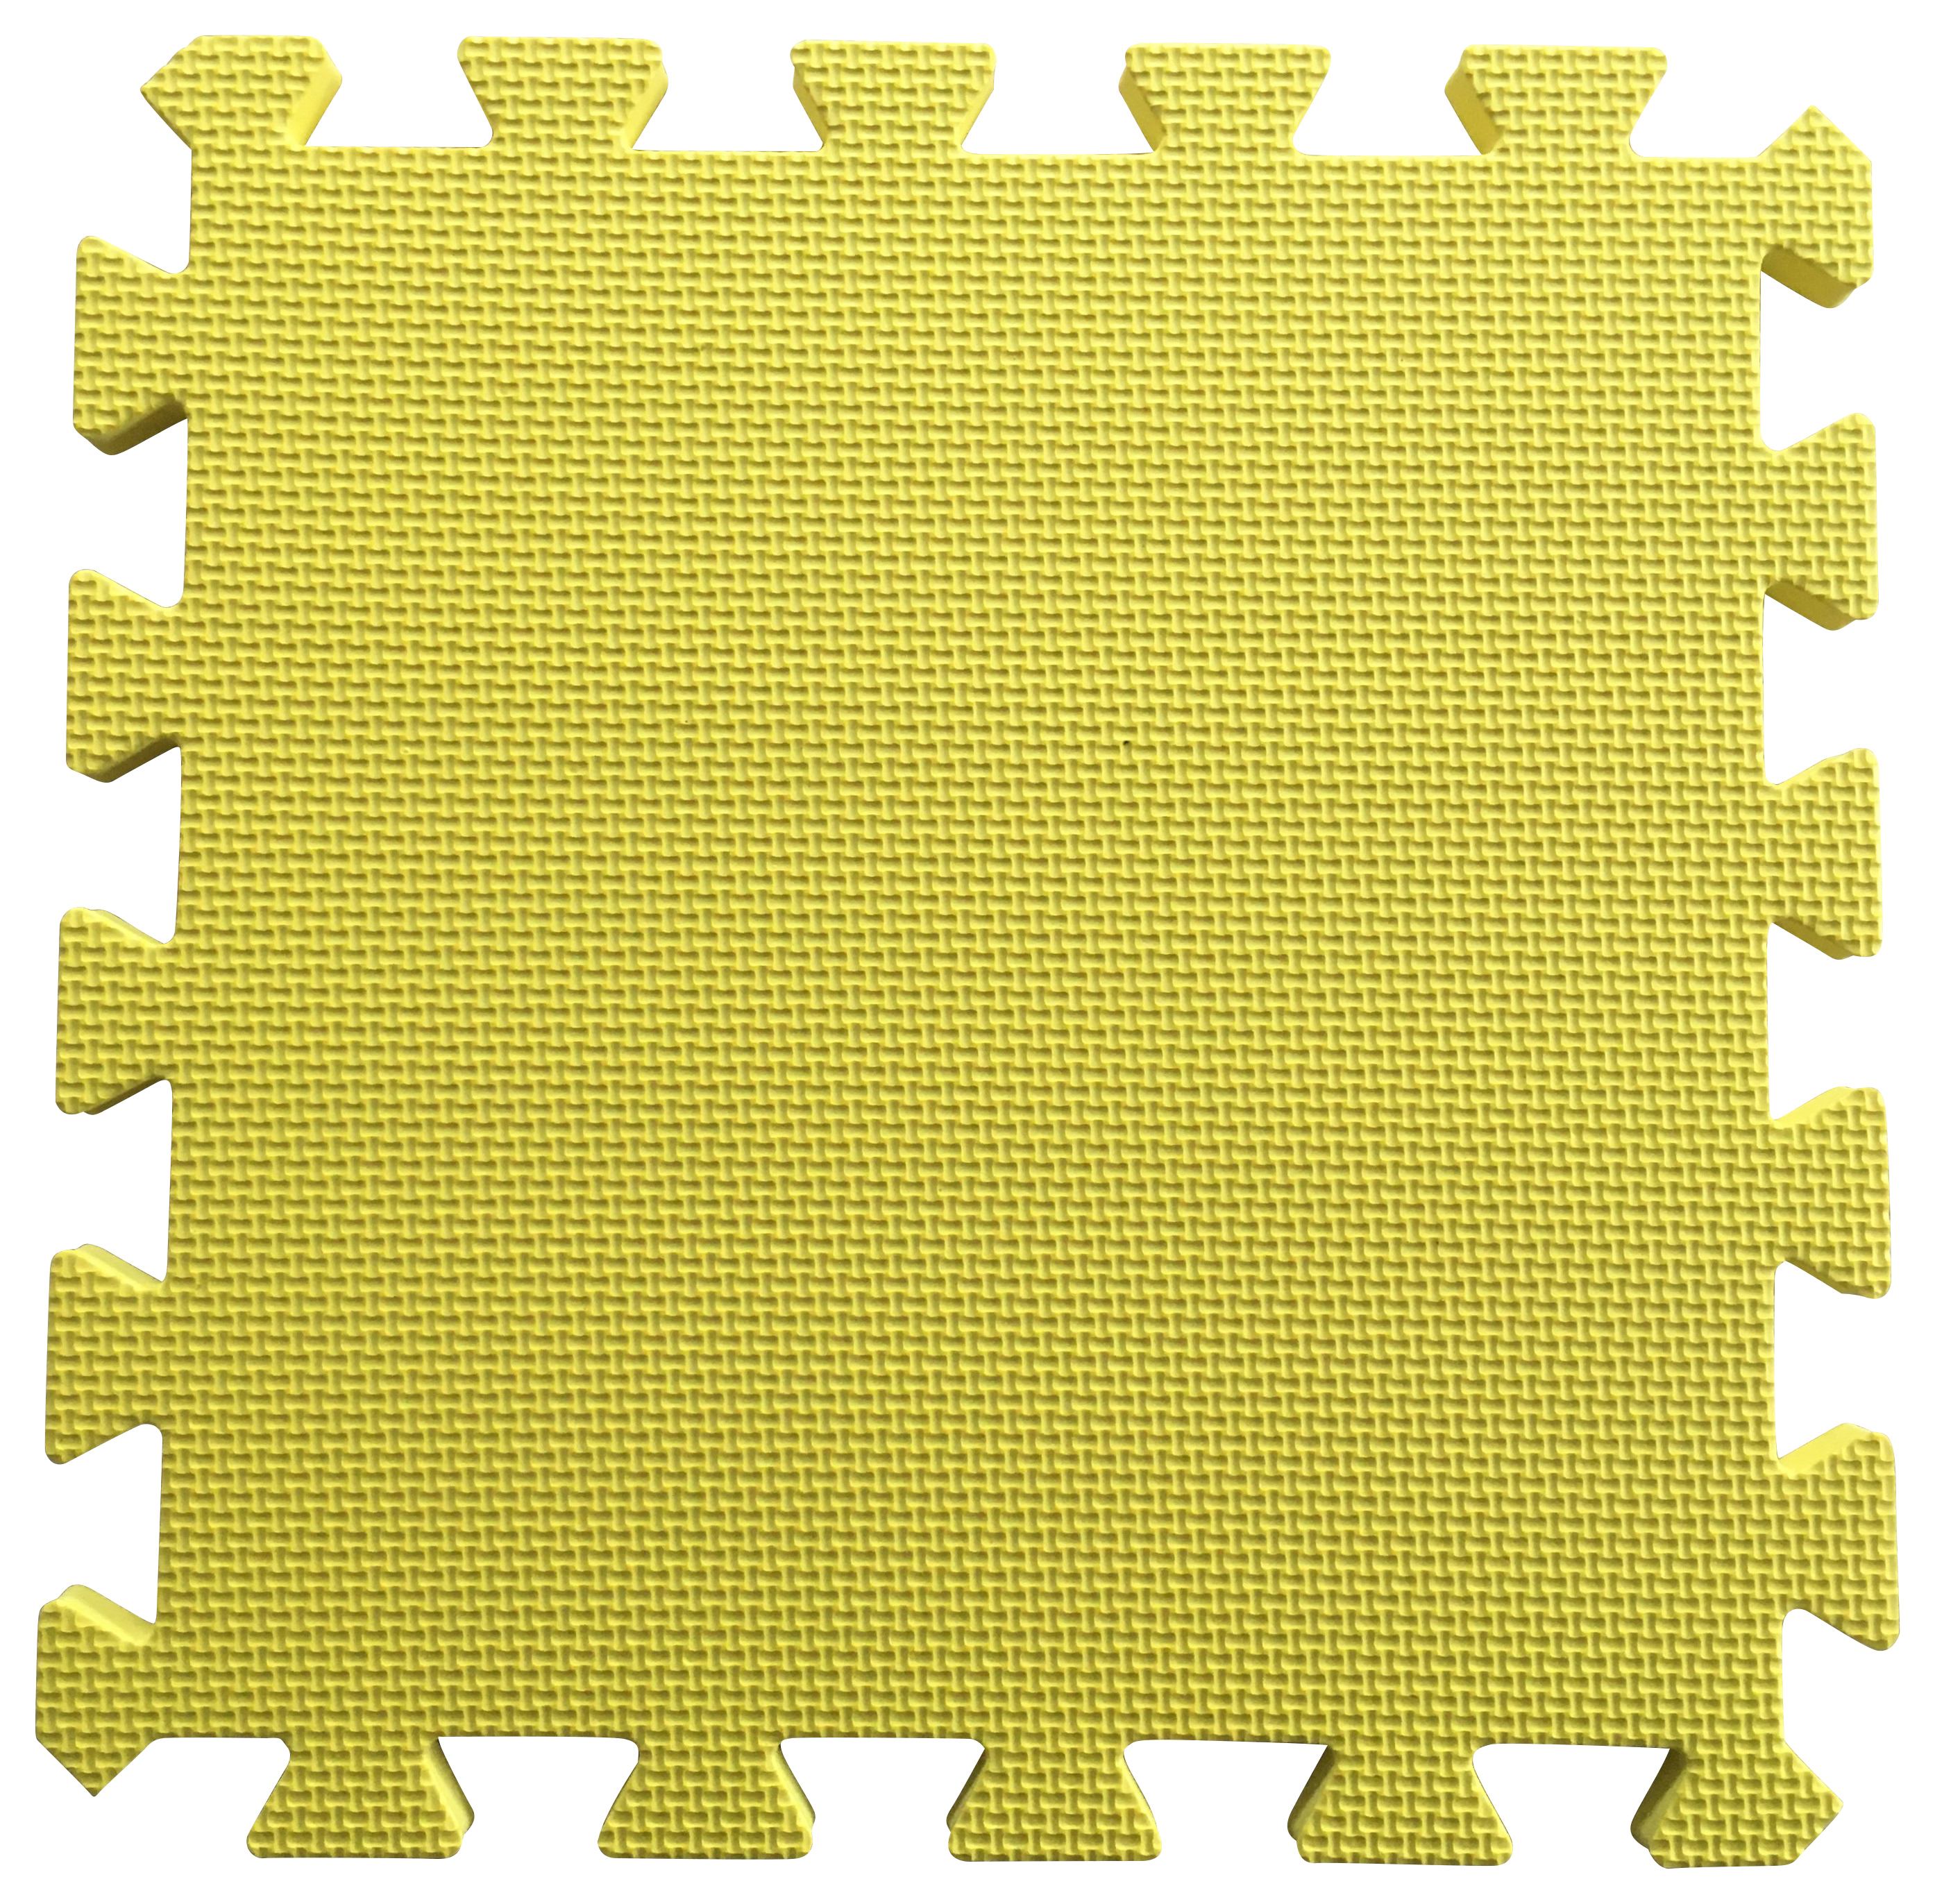 Warm Floor Yellow Interlocking Floor Tiles for Garden Buildings - 6 x 6ft